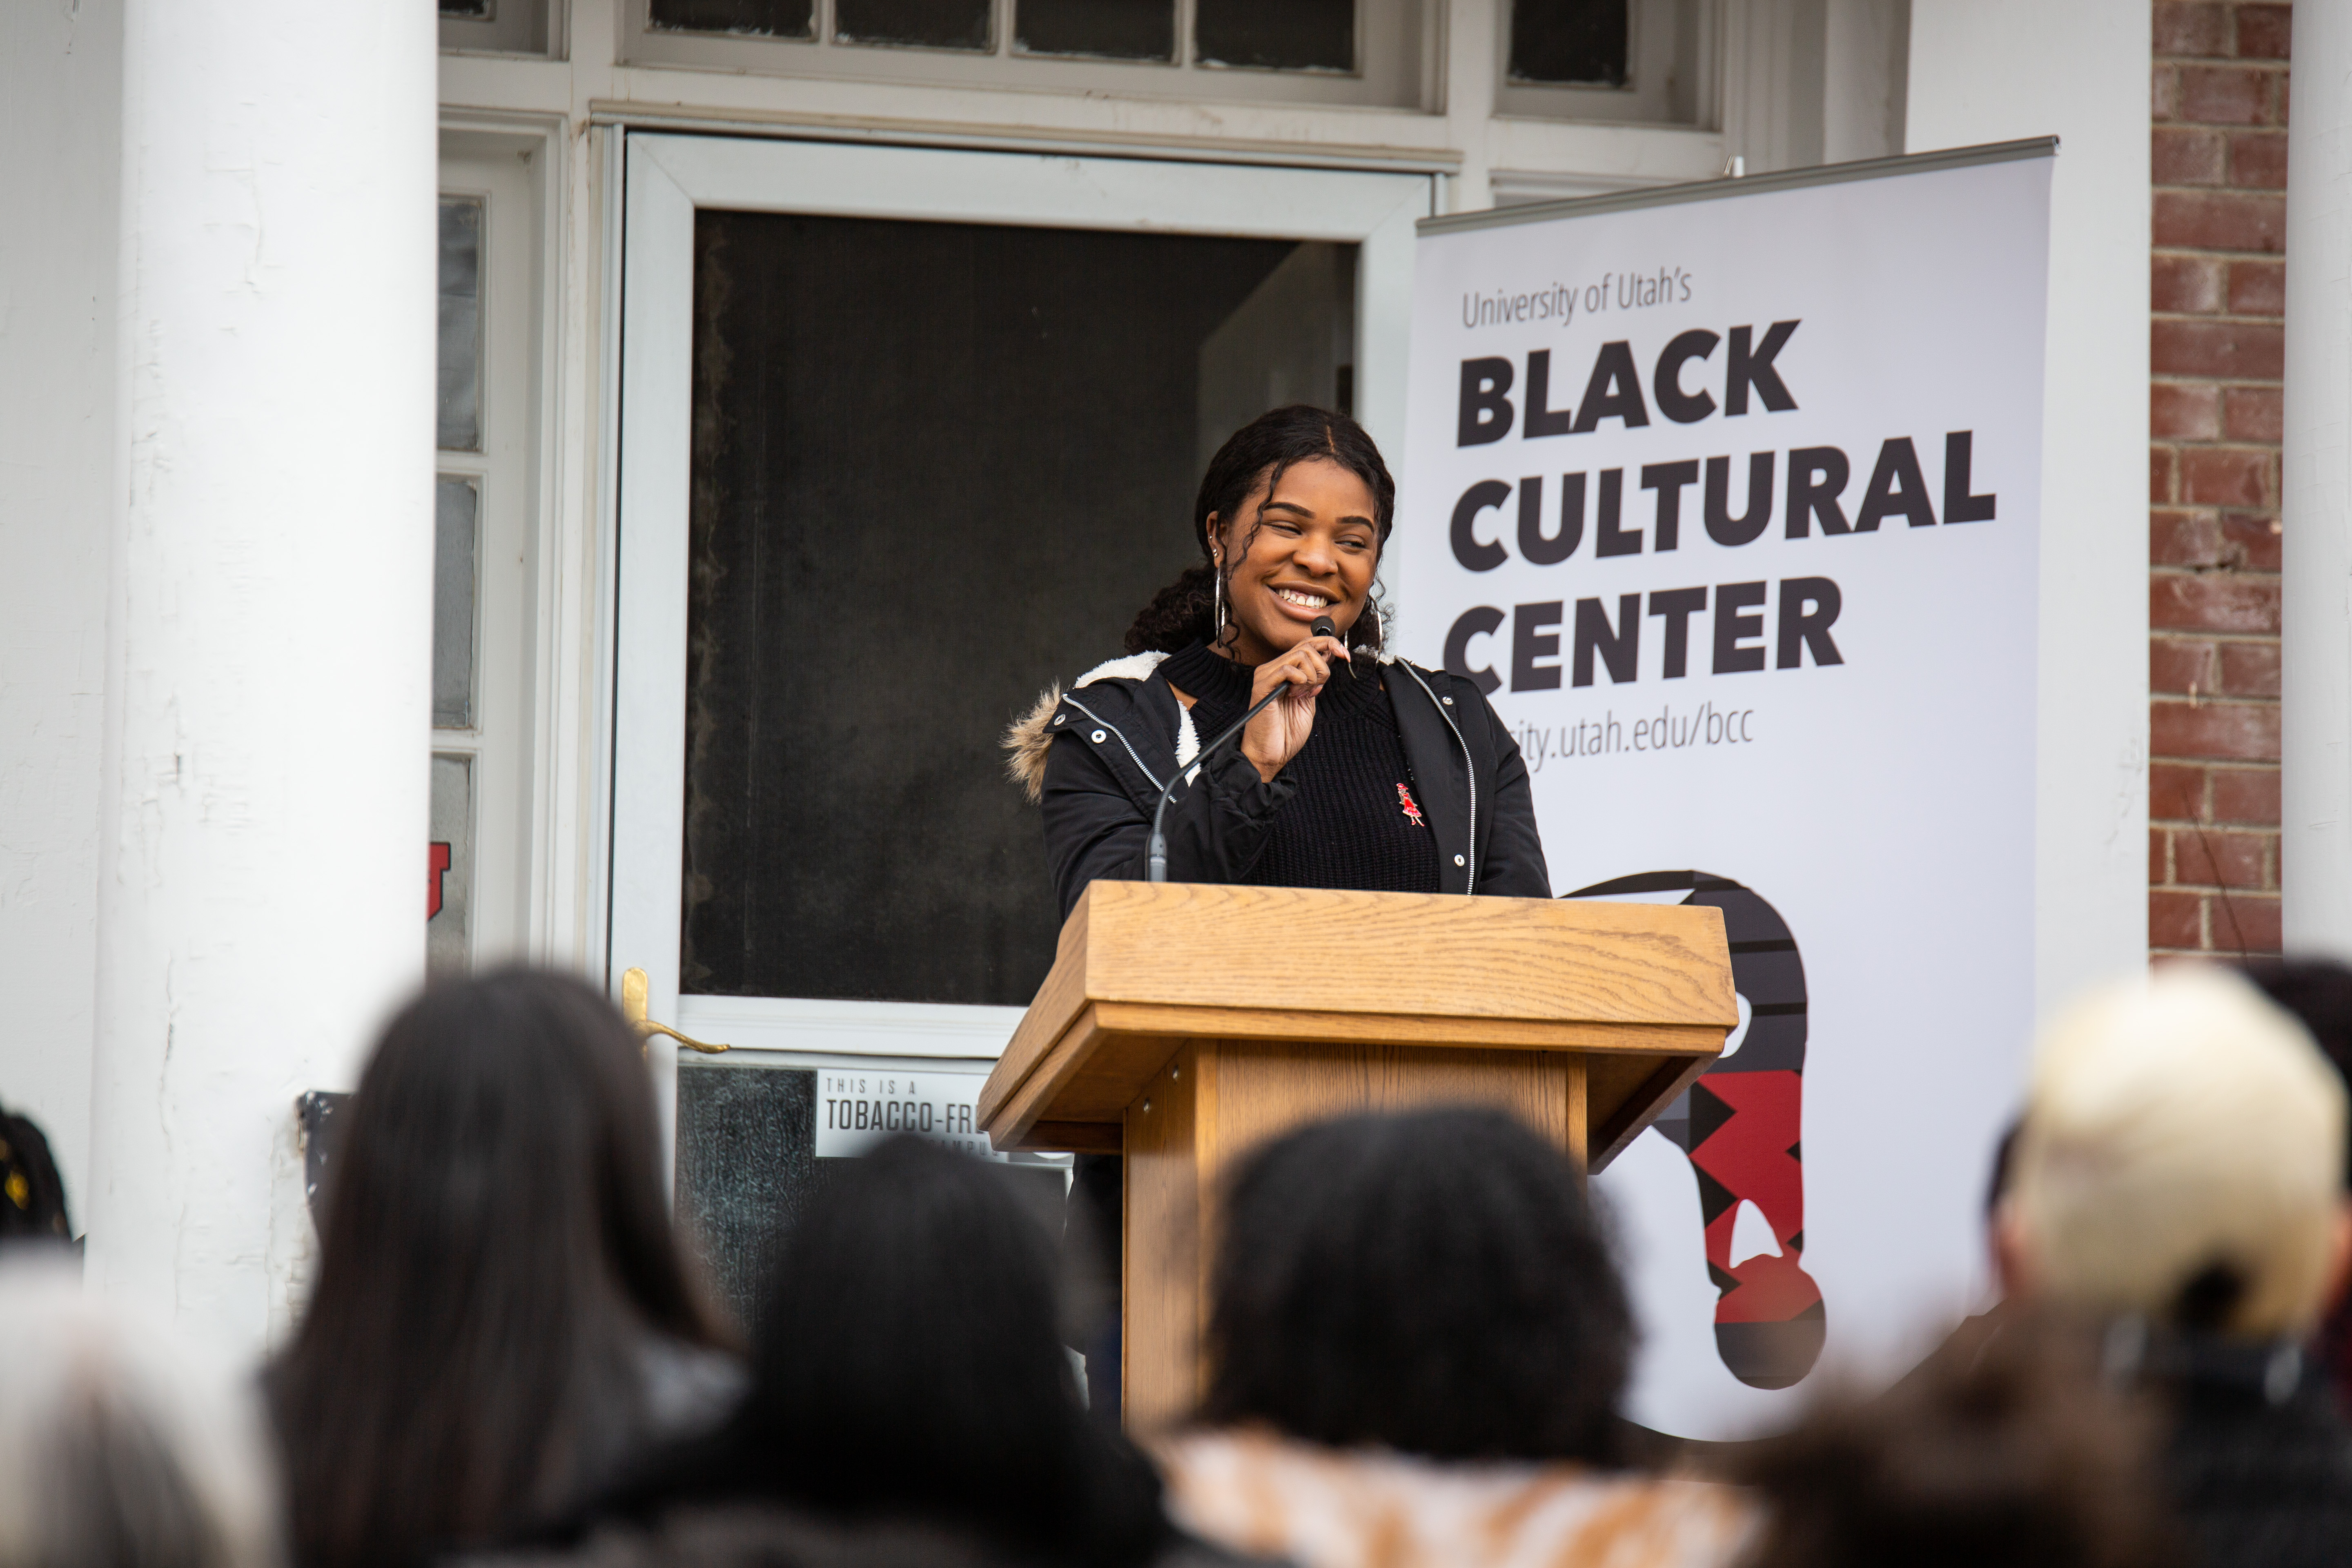 Alexis Baker, Black Student Union Member speaks at the Black Cultural Center in Salt Lake City, Utah University of Utah, 95 Fort Douglas Blvd. (Bldg. 603)